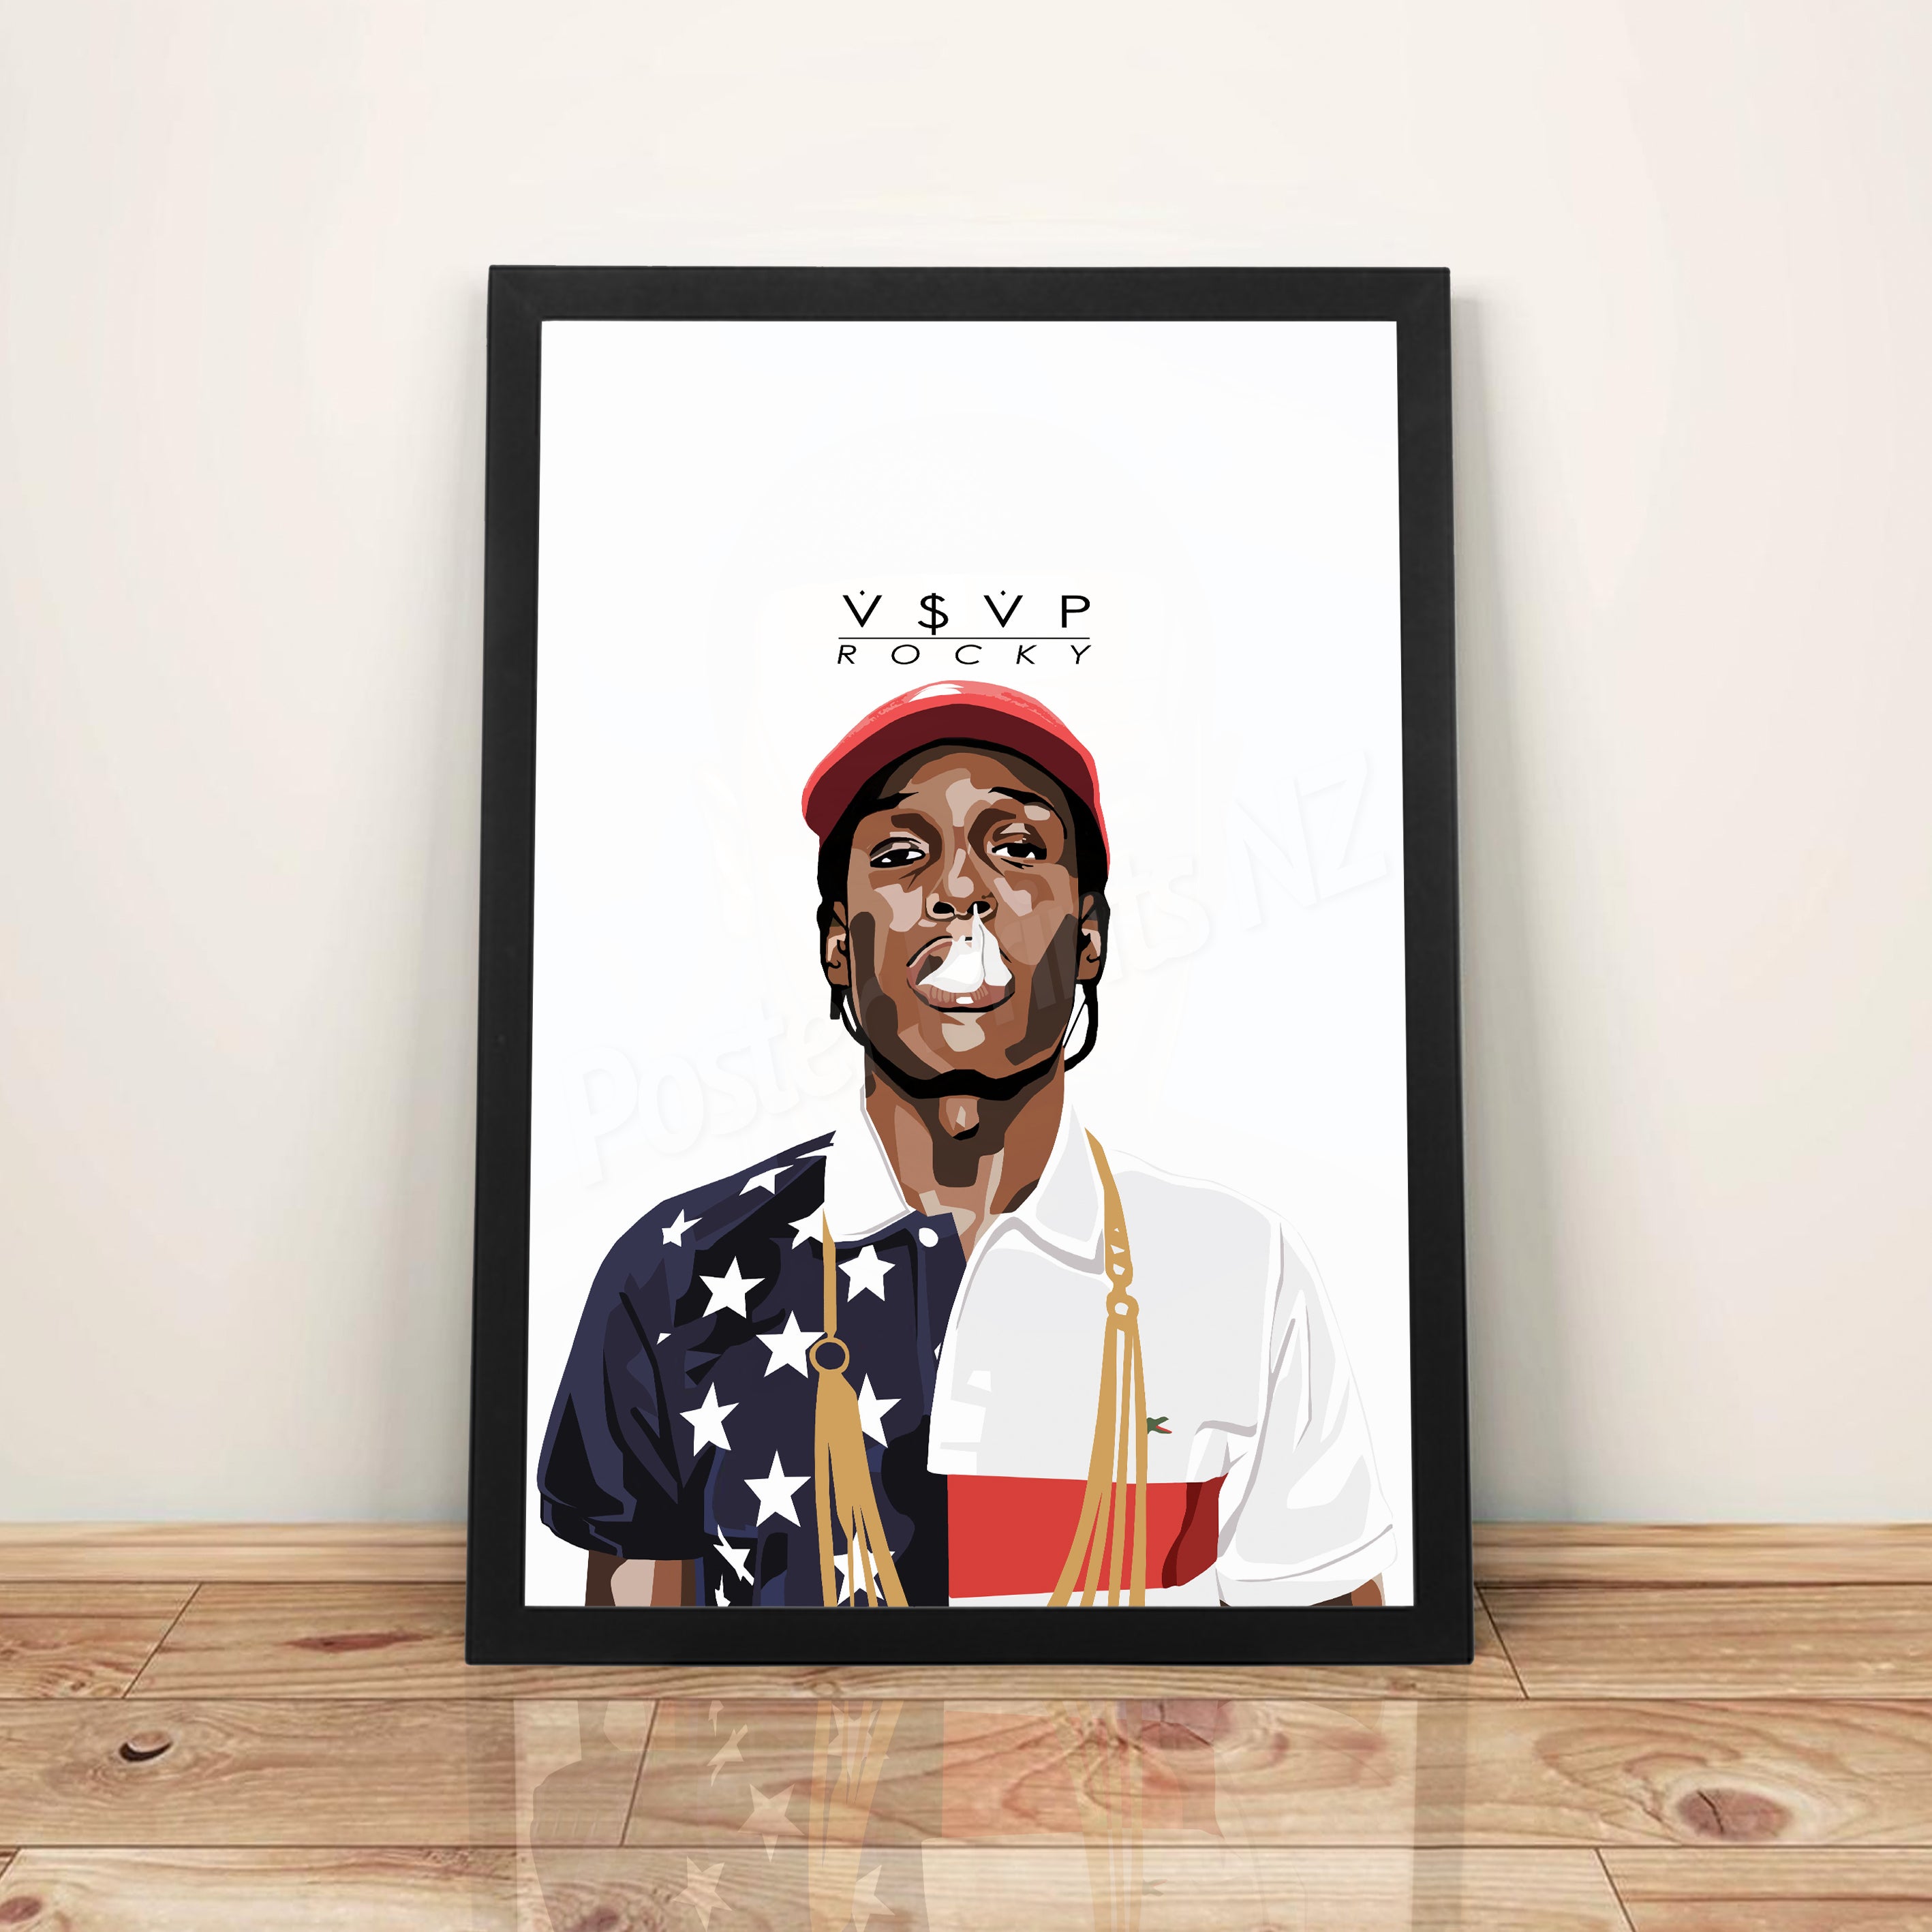 A$AP Rocky - A3 Framed Digital Art Poster